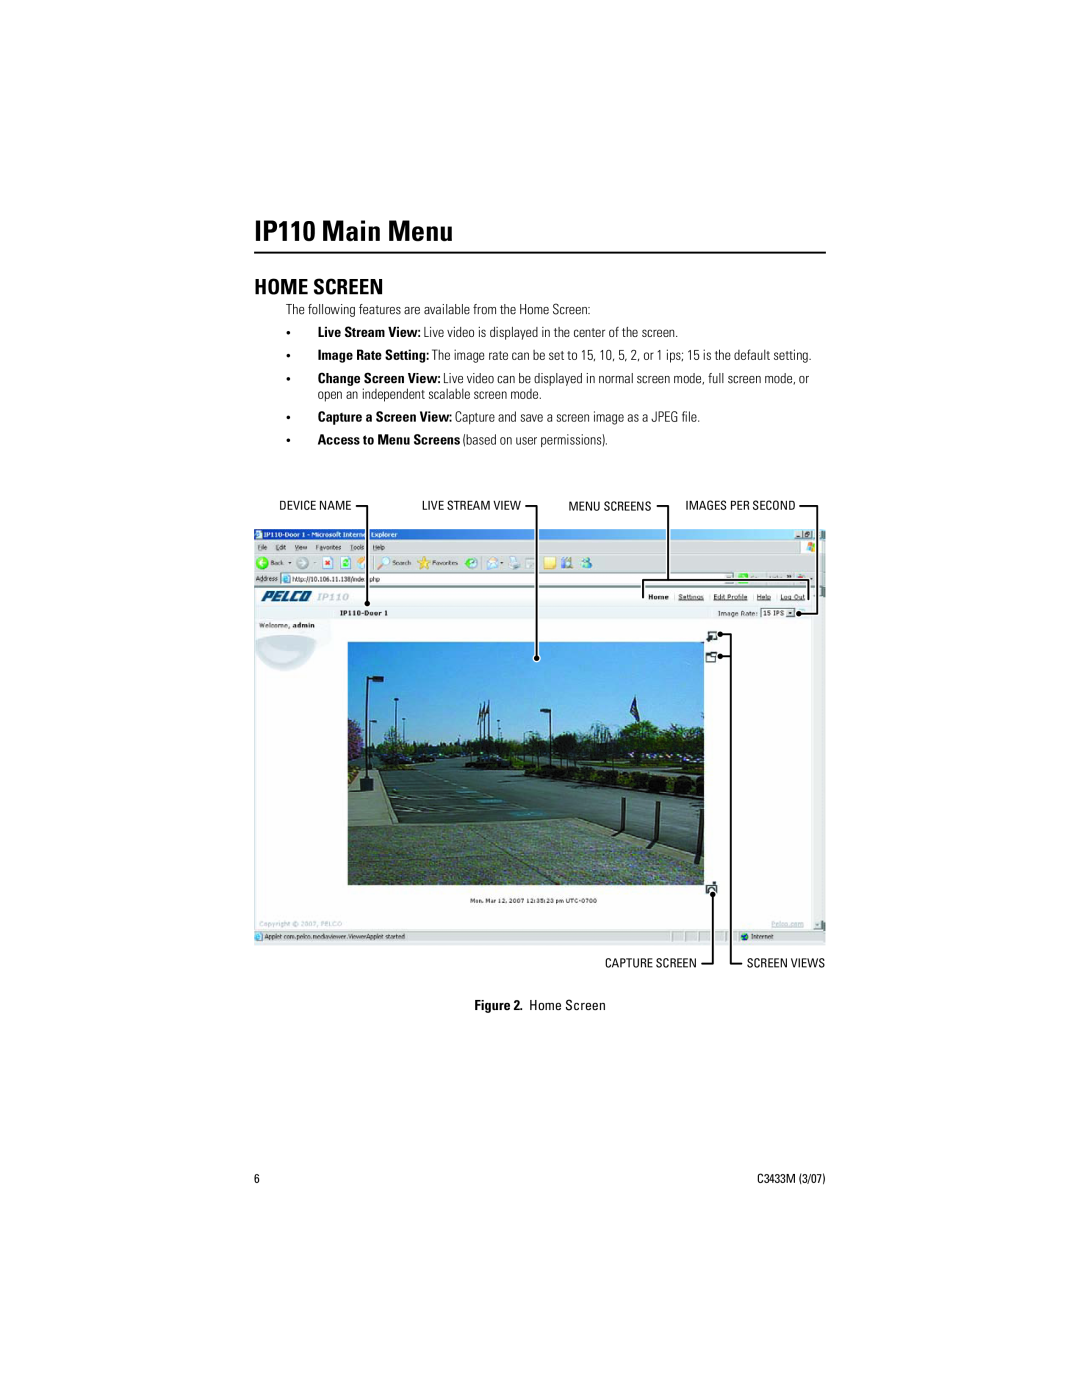 Pelco C3433M (3/07) manual IP110 Main Menu, Home Screen 